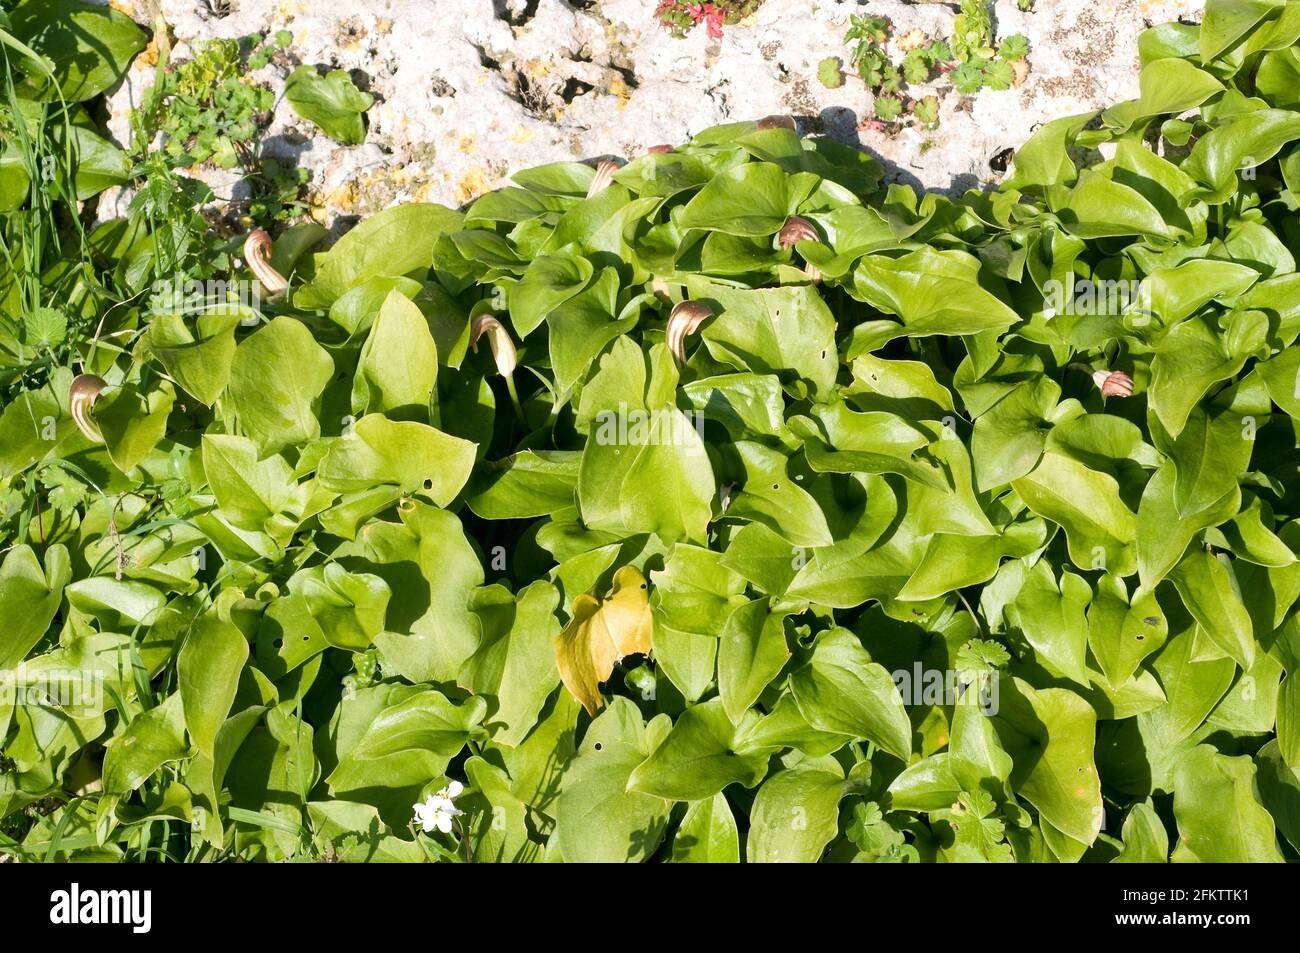 Die Mönchskutte (Arisarum vulgare) ist ein giftiges, mehrjähriges Kraut, das im Mittelmeerraum und in der Macaronesie beheimatet ist. Dieses Foto wurde auf Menorca, Balearen, aufgenommen Stockfoto